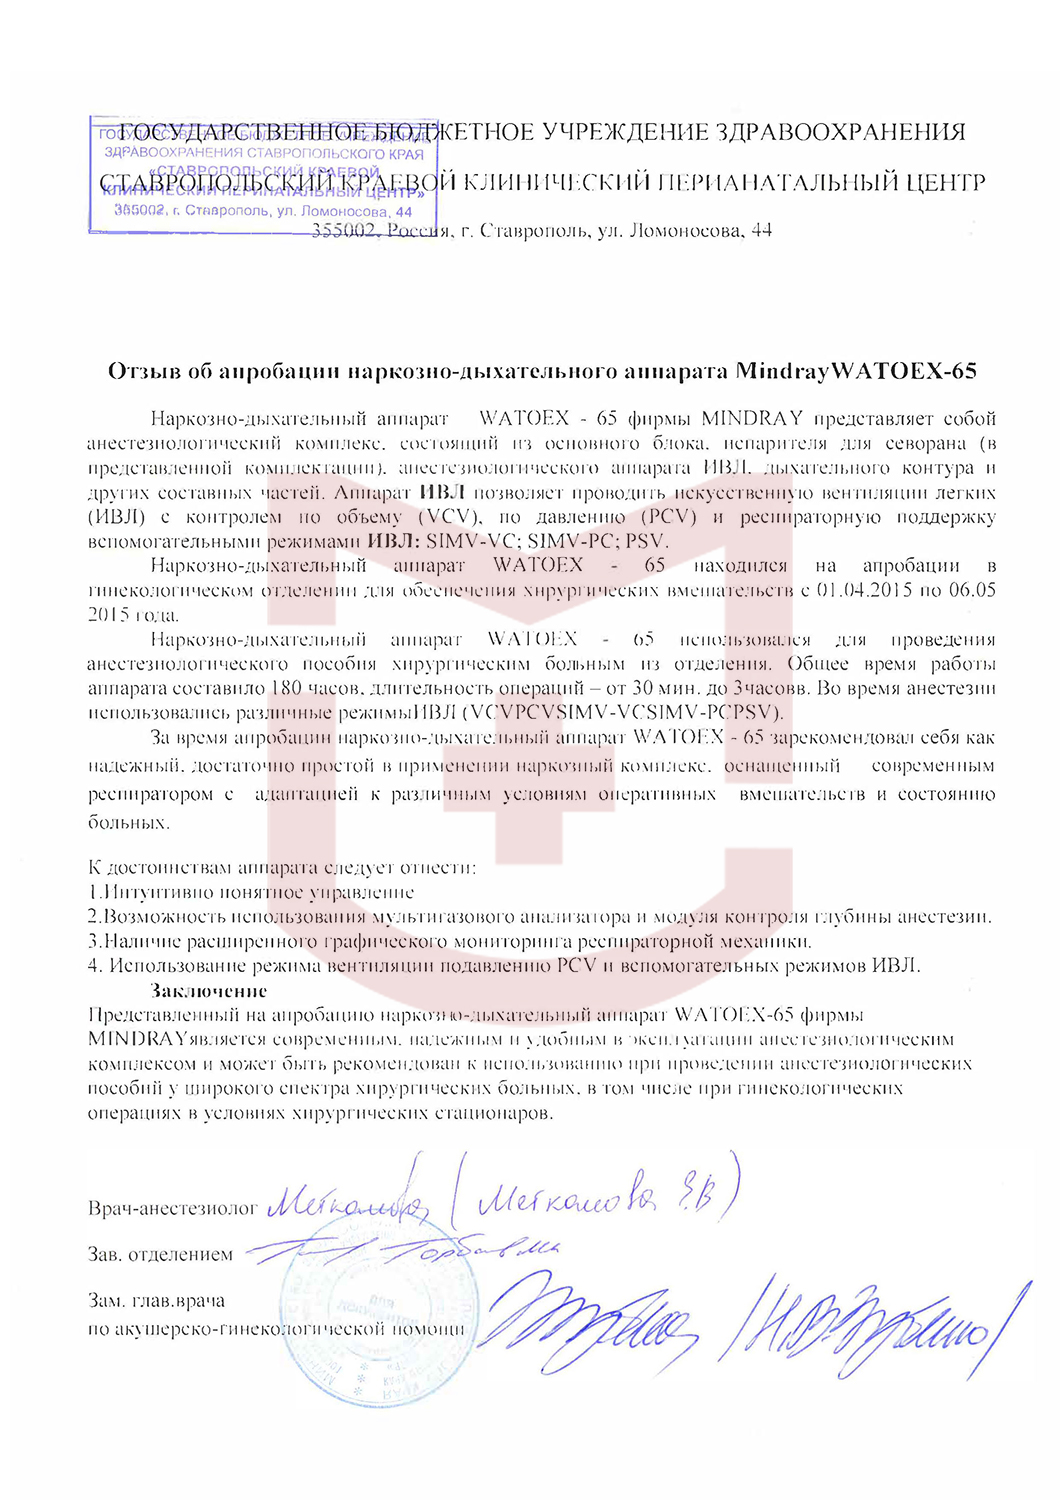 Отзыв от Ставропольского краевого клинического перинатального центра